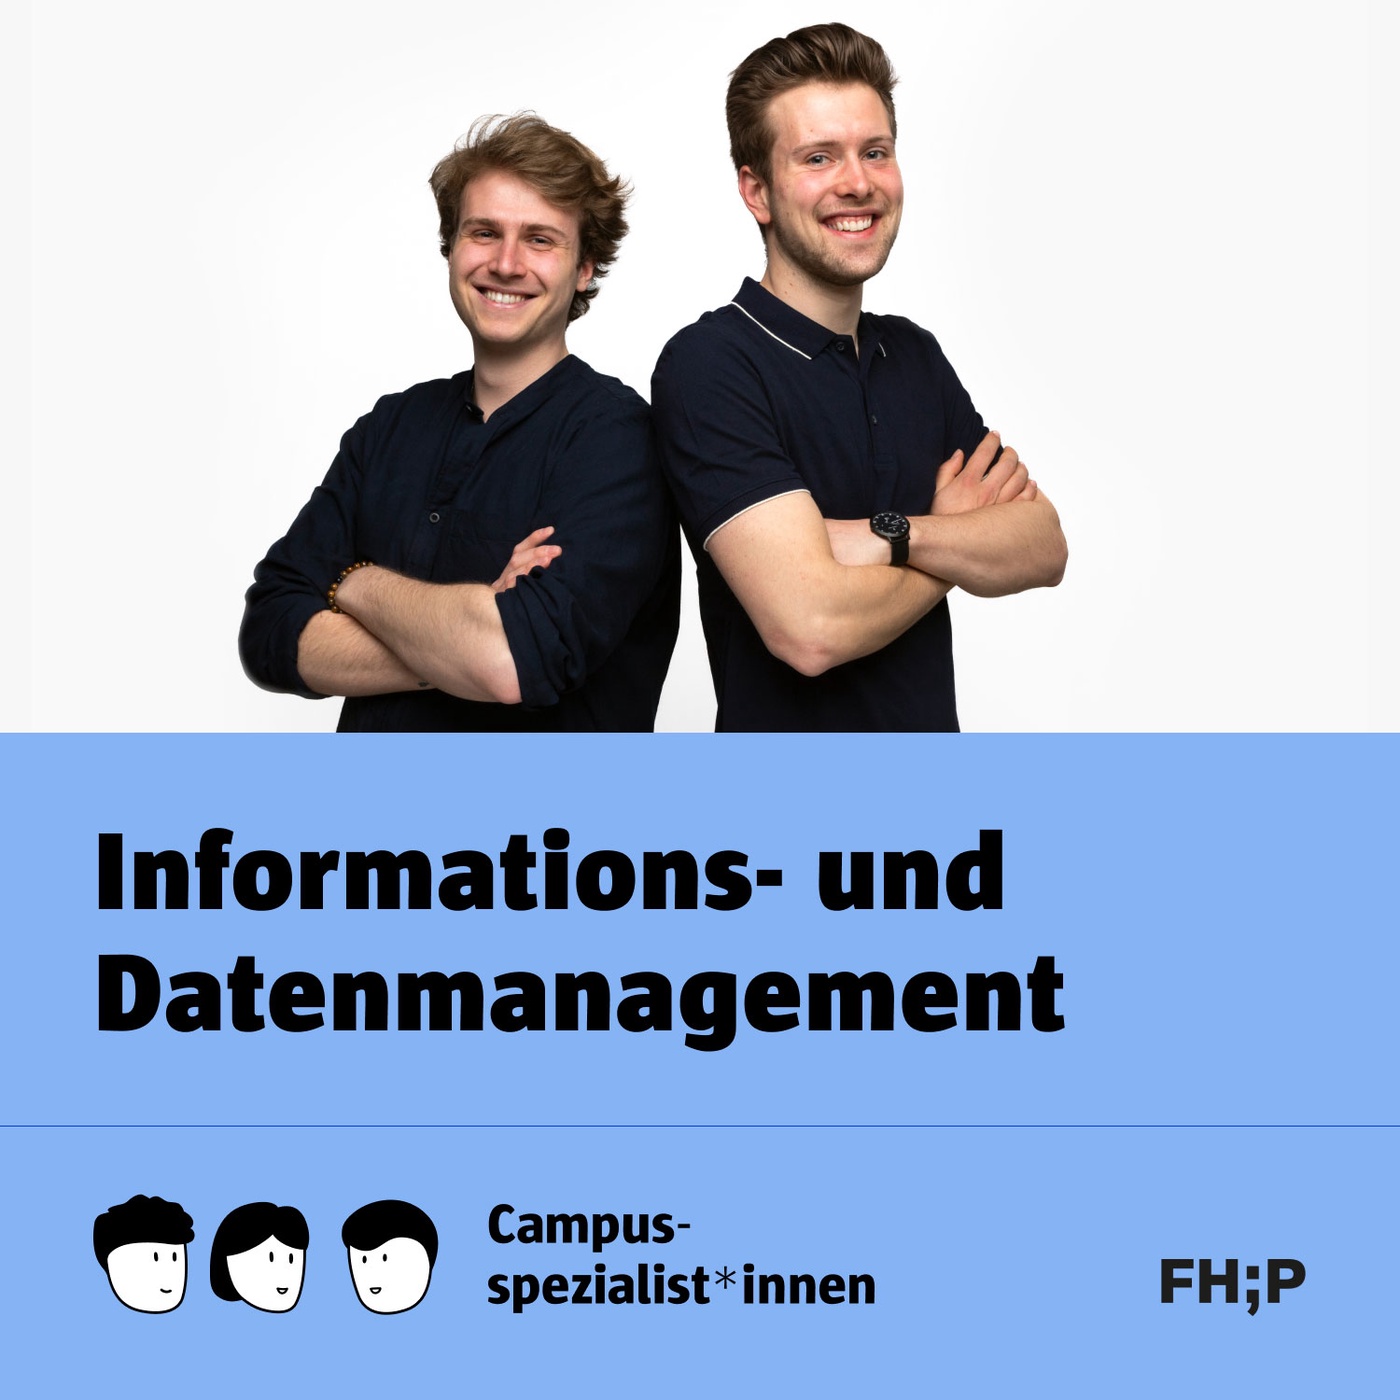 Informations- und Datenmanagement - Folge 6: Arbeiten neben dem Studium? -  Let’s work it out!